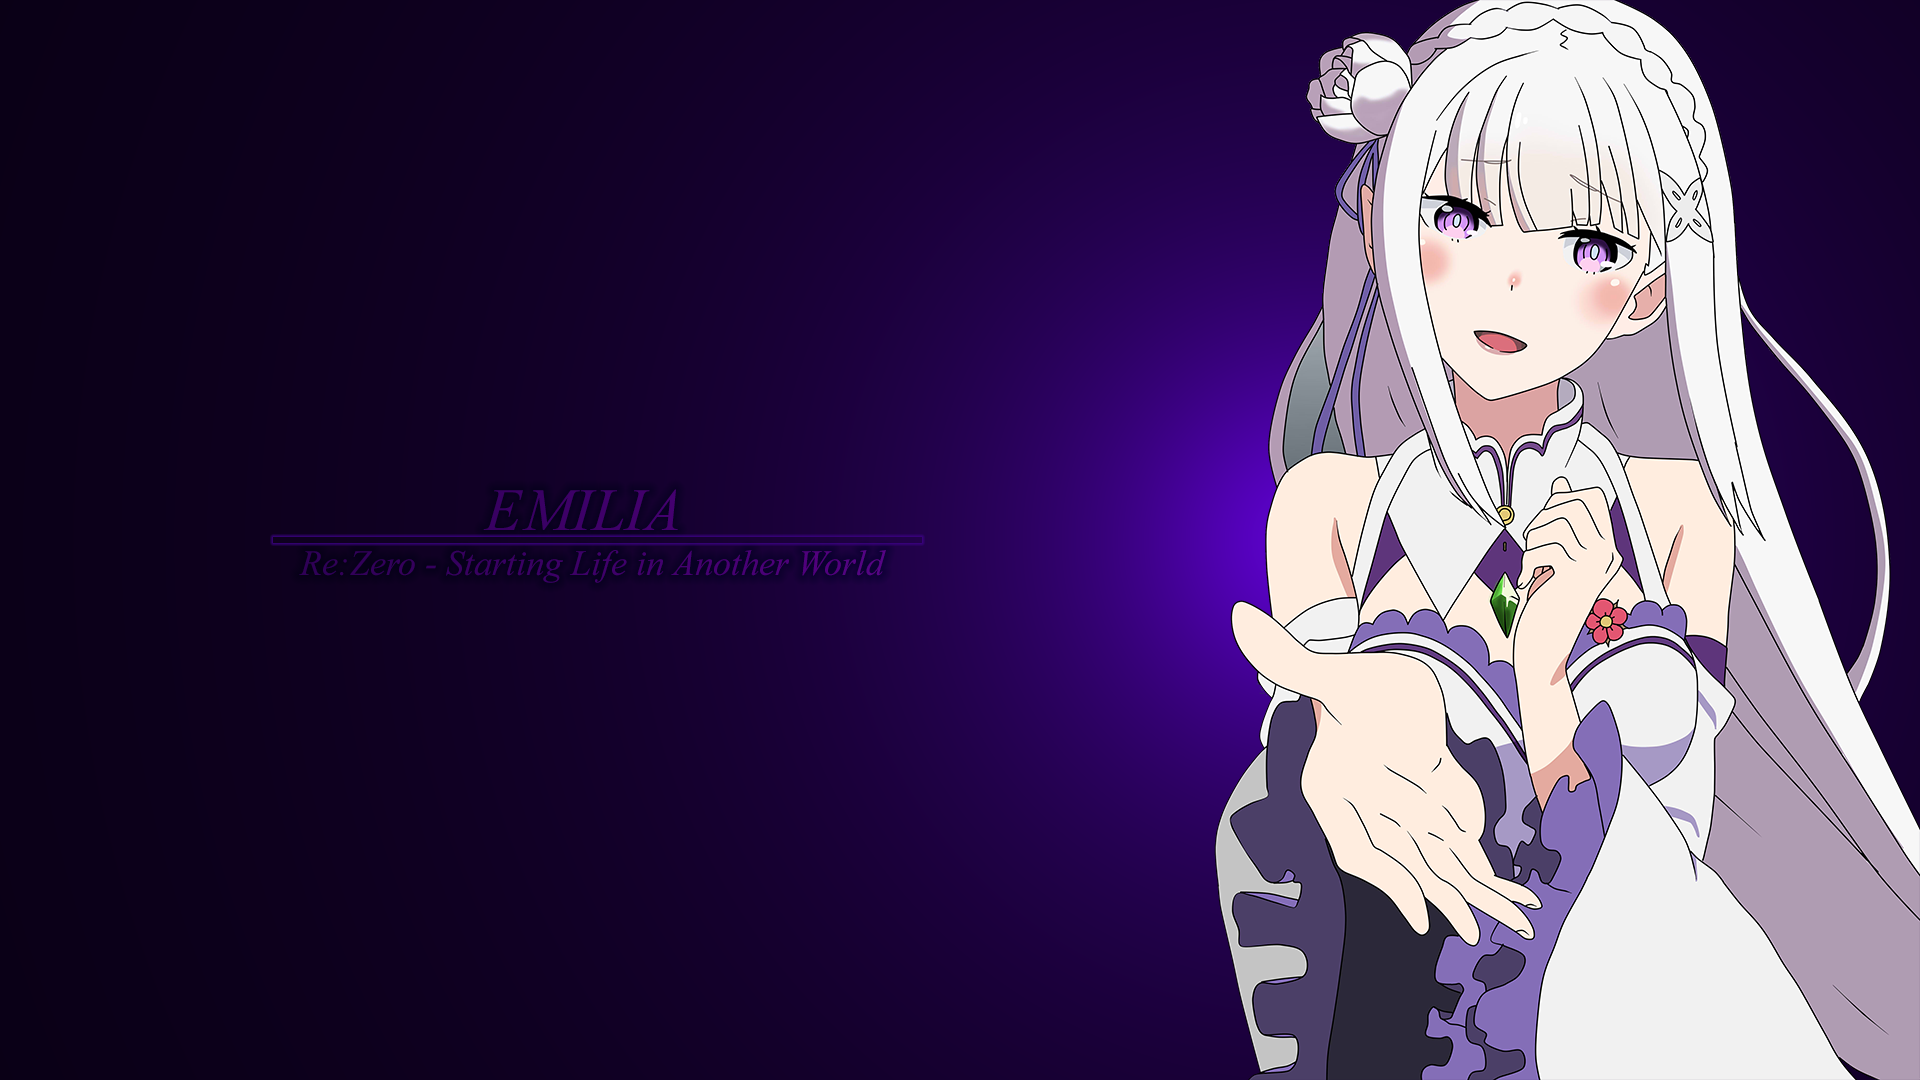 Emilia by aSC. 